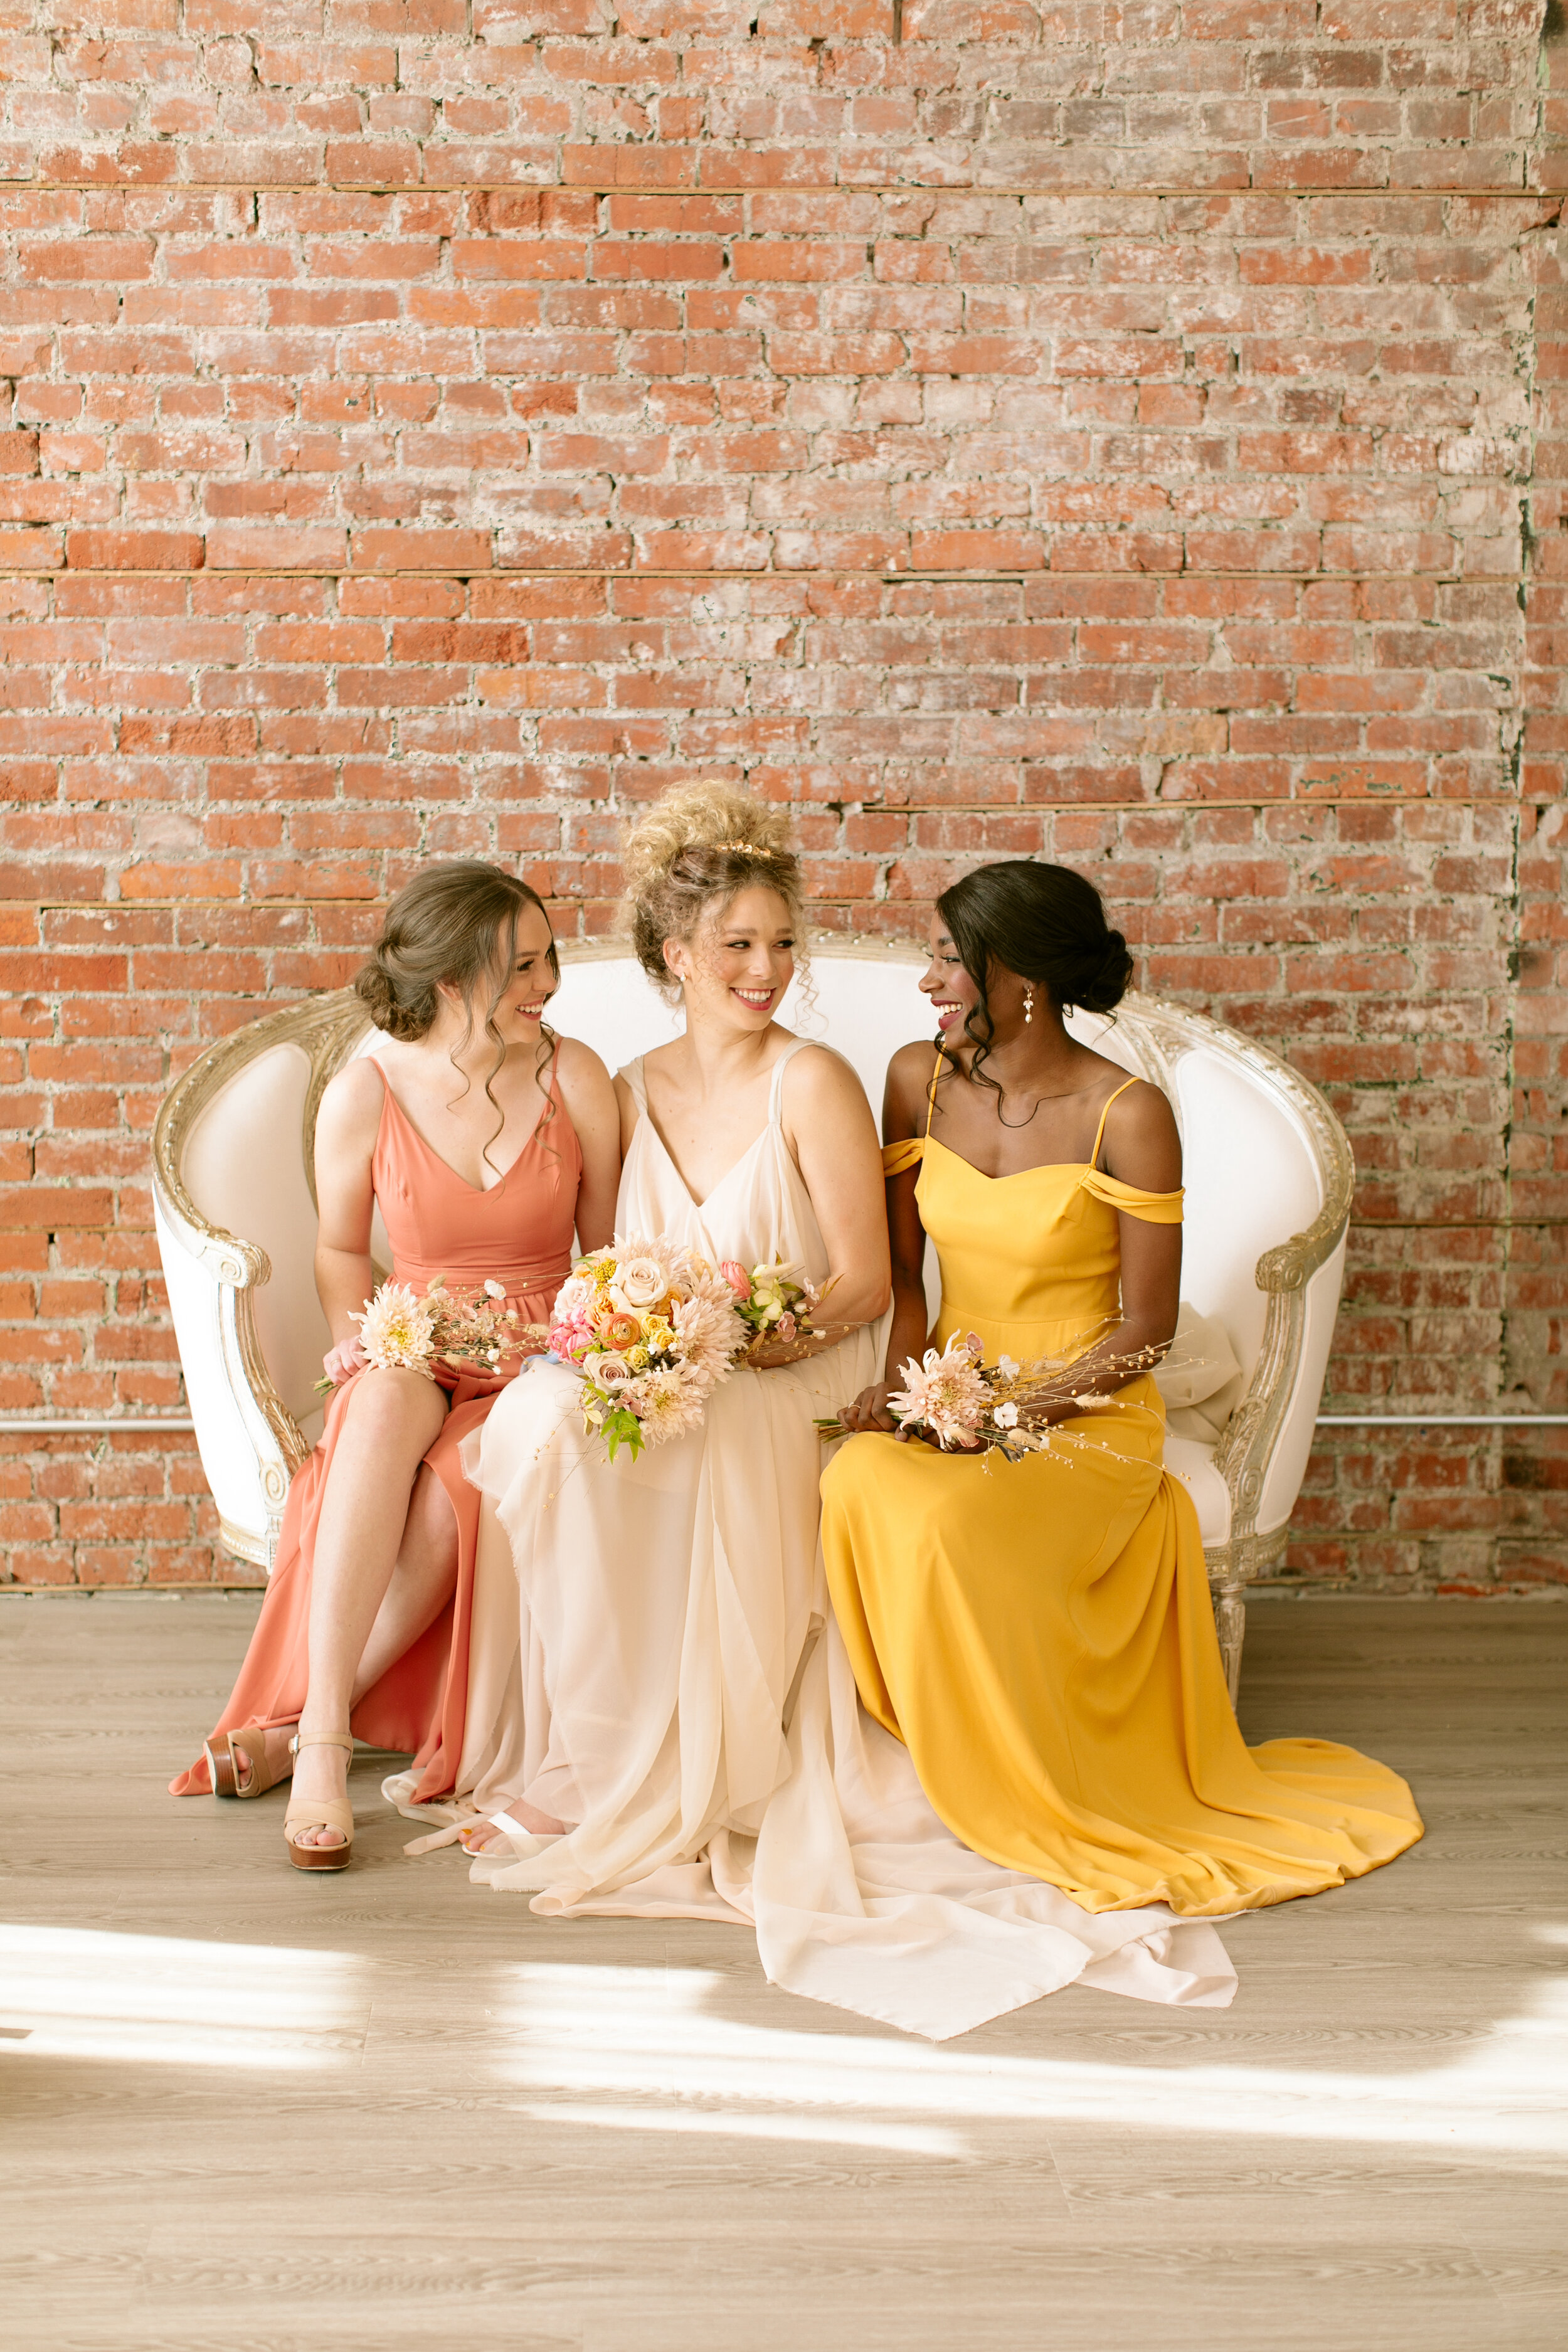 Wedding Inspiration - Bride and Bridesmaids - Venue308 Bronte Bride Blog Feature